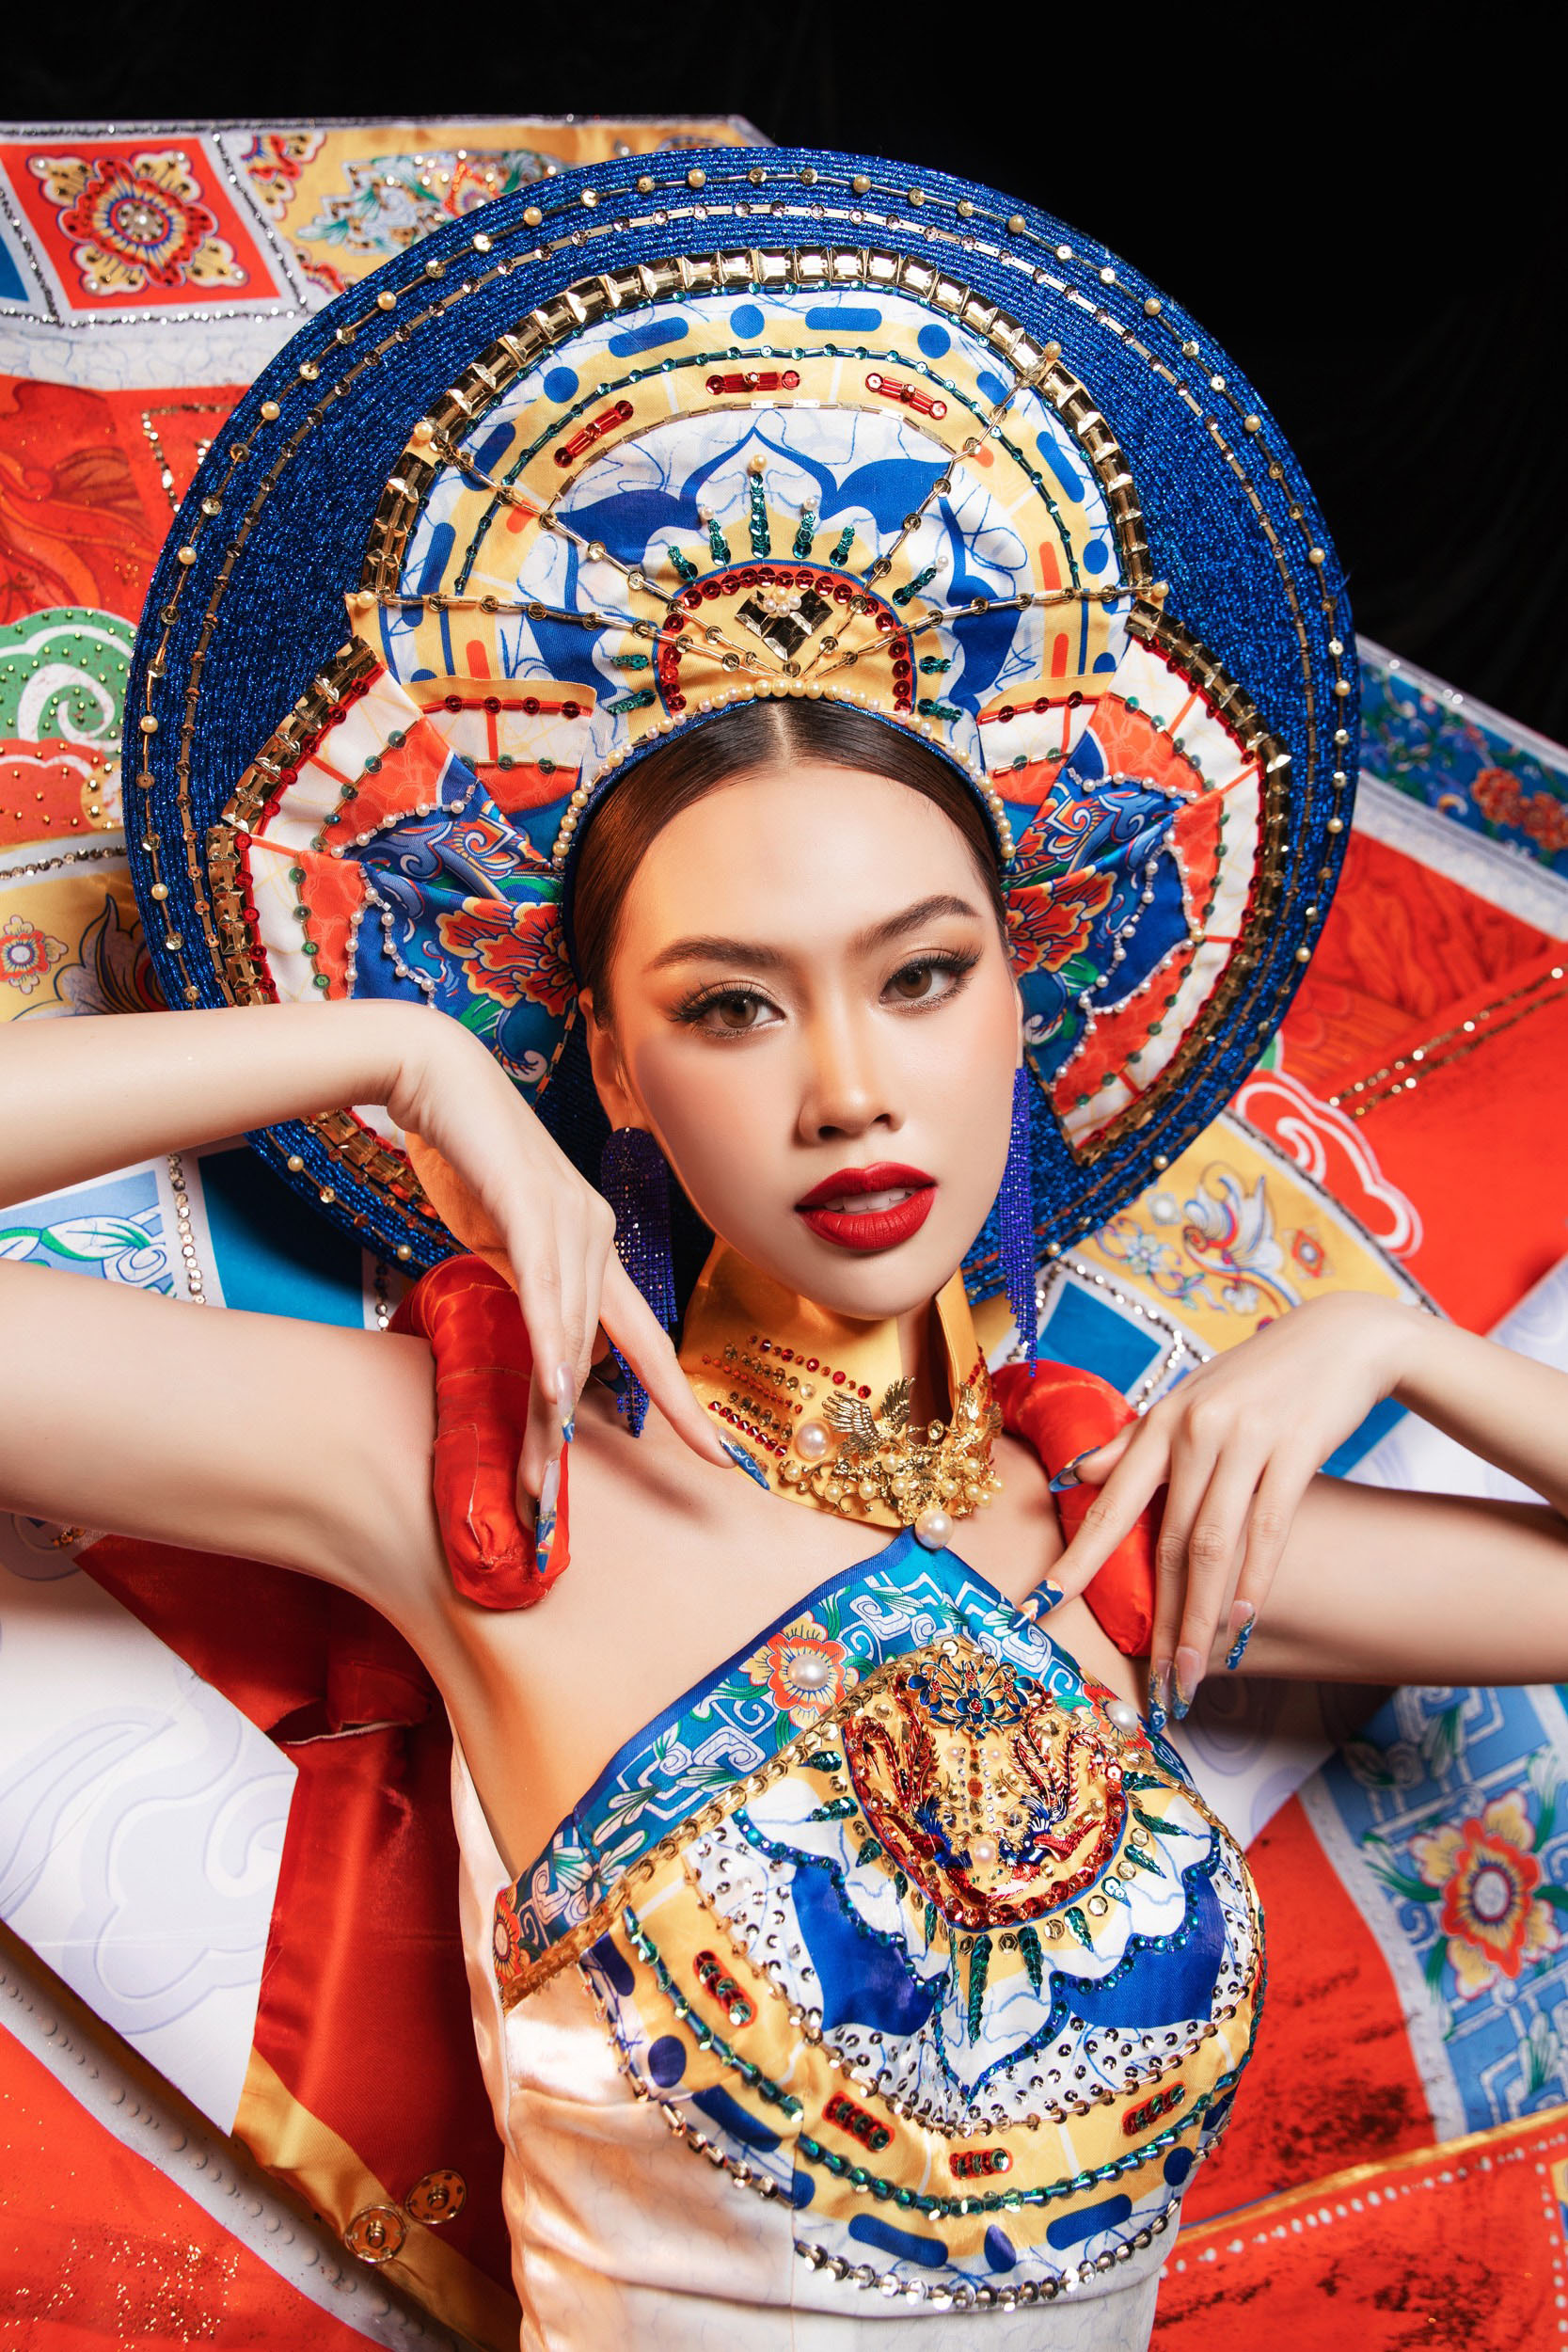 Đặng Hoàng Tâm Như trình diễn trang phục dân tộc lấy cảm hứng từ nghệ thuật Pháp lam Huế - 4